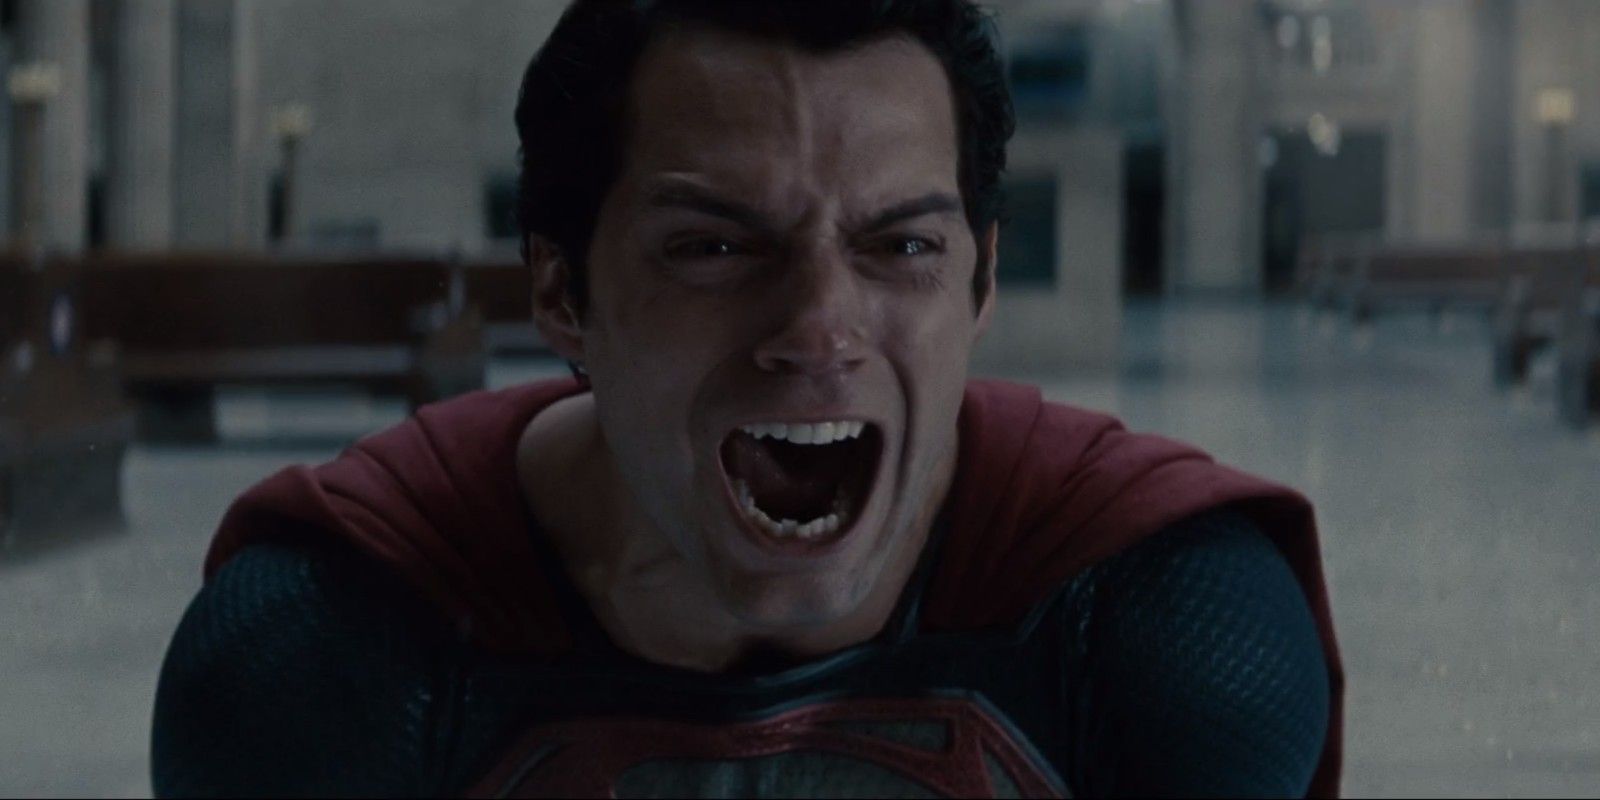 Superman screaming in sorrow in Man Of Steel (2013)